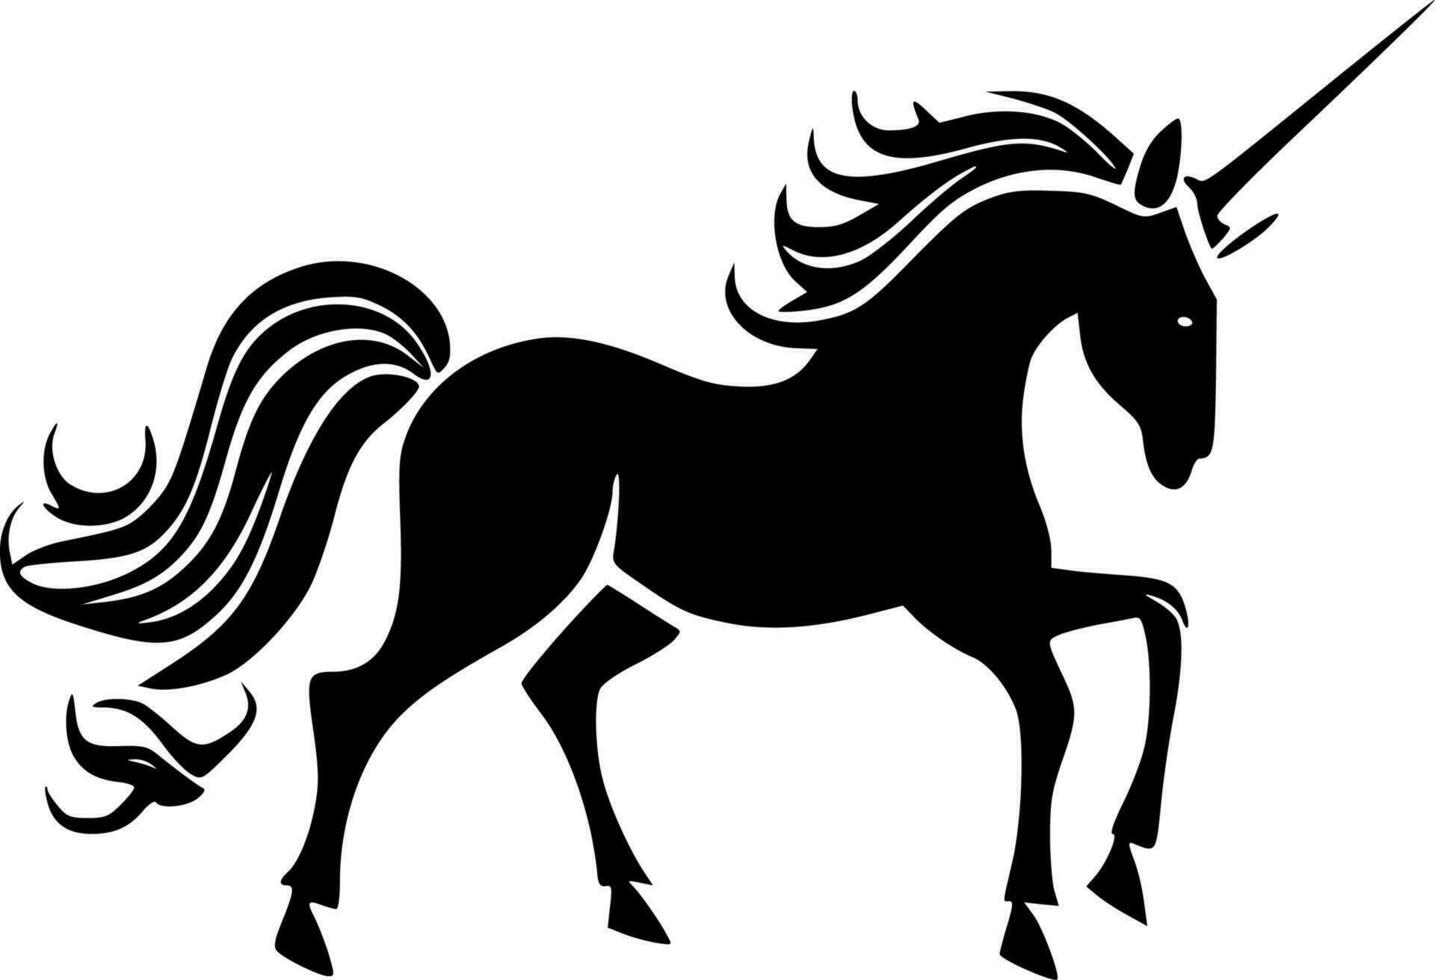 Unicorns, Minimalist and Simple Silhouette - Vector illustration